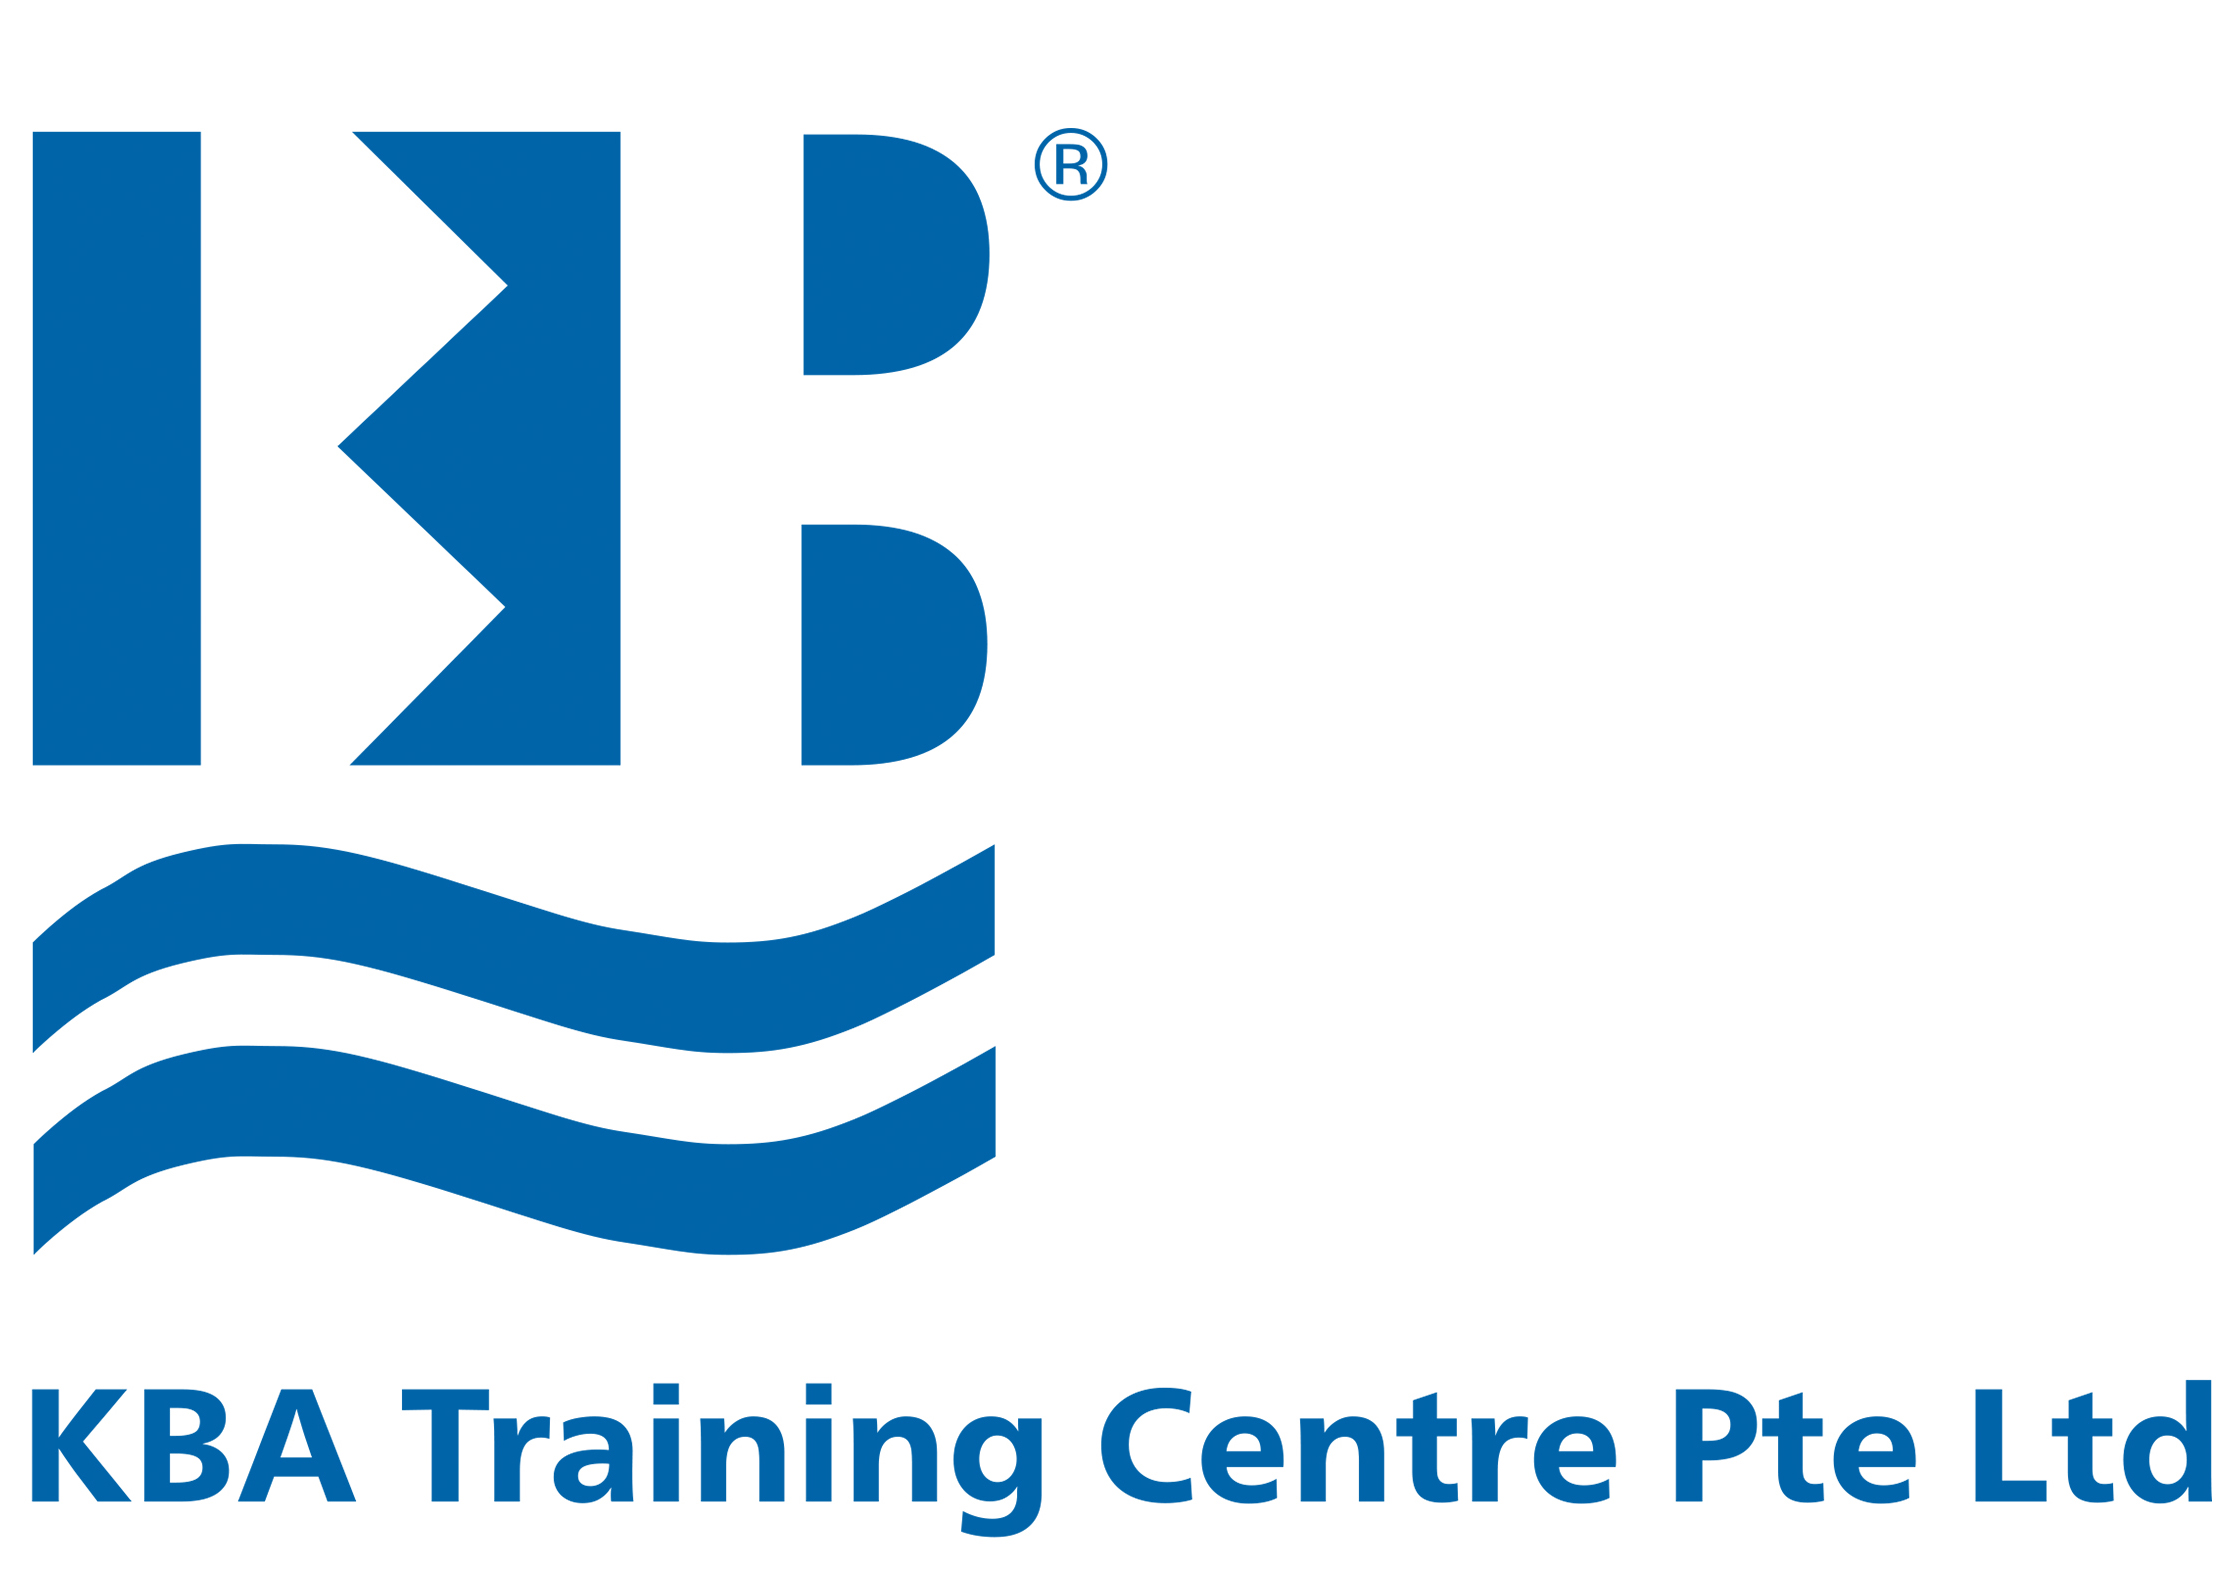 KBA Training Centre